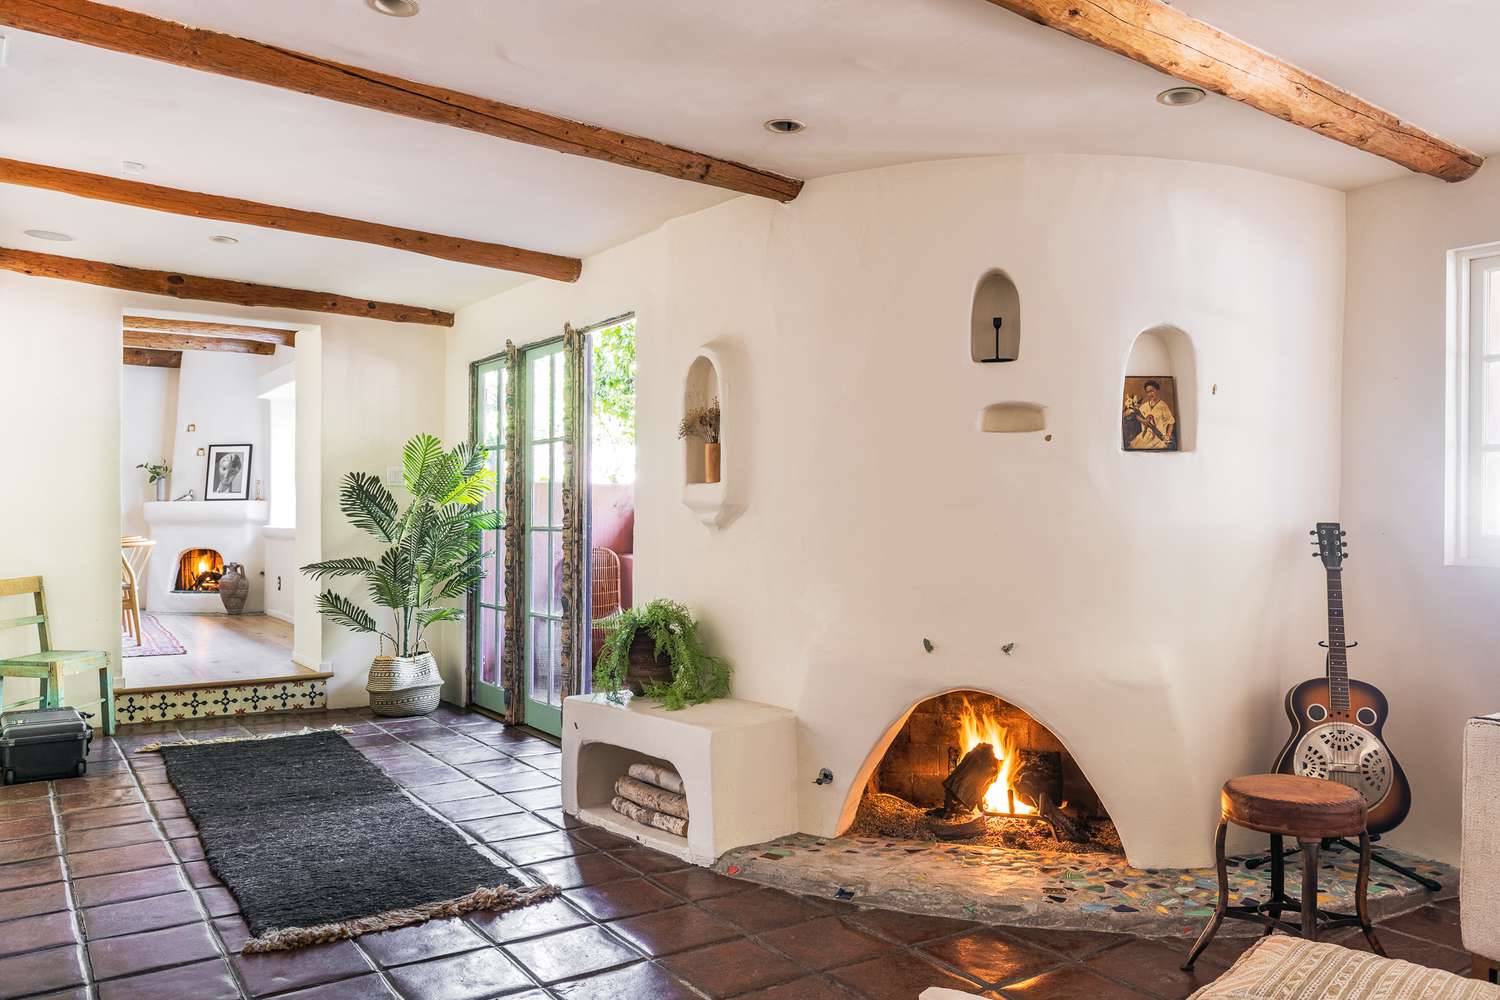 Wohnzimmer eines Hauses im spanischen Stil mit Kamin und Holzbalken an der Decke